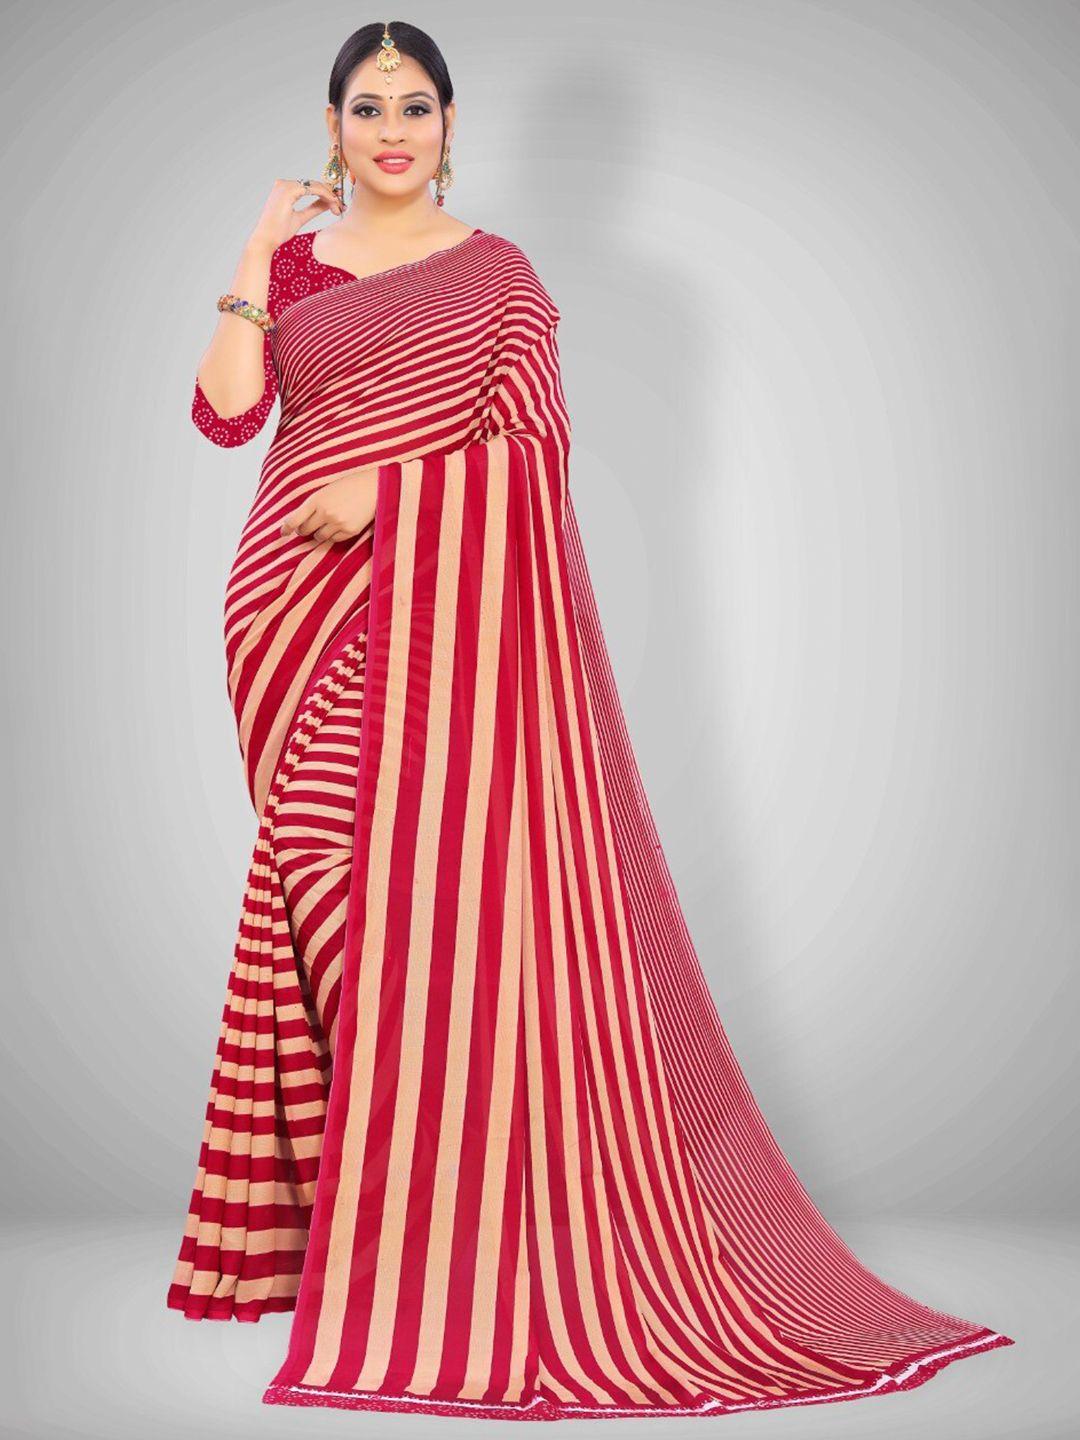 abhilasha red & cream-coloured striped saree